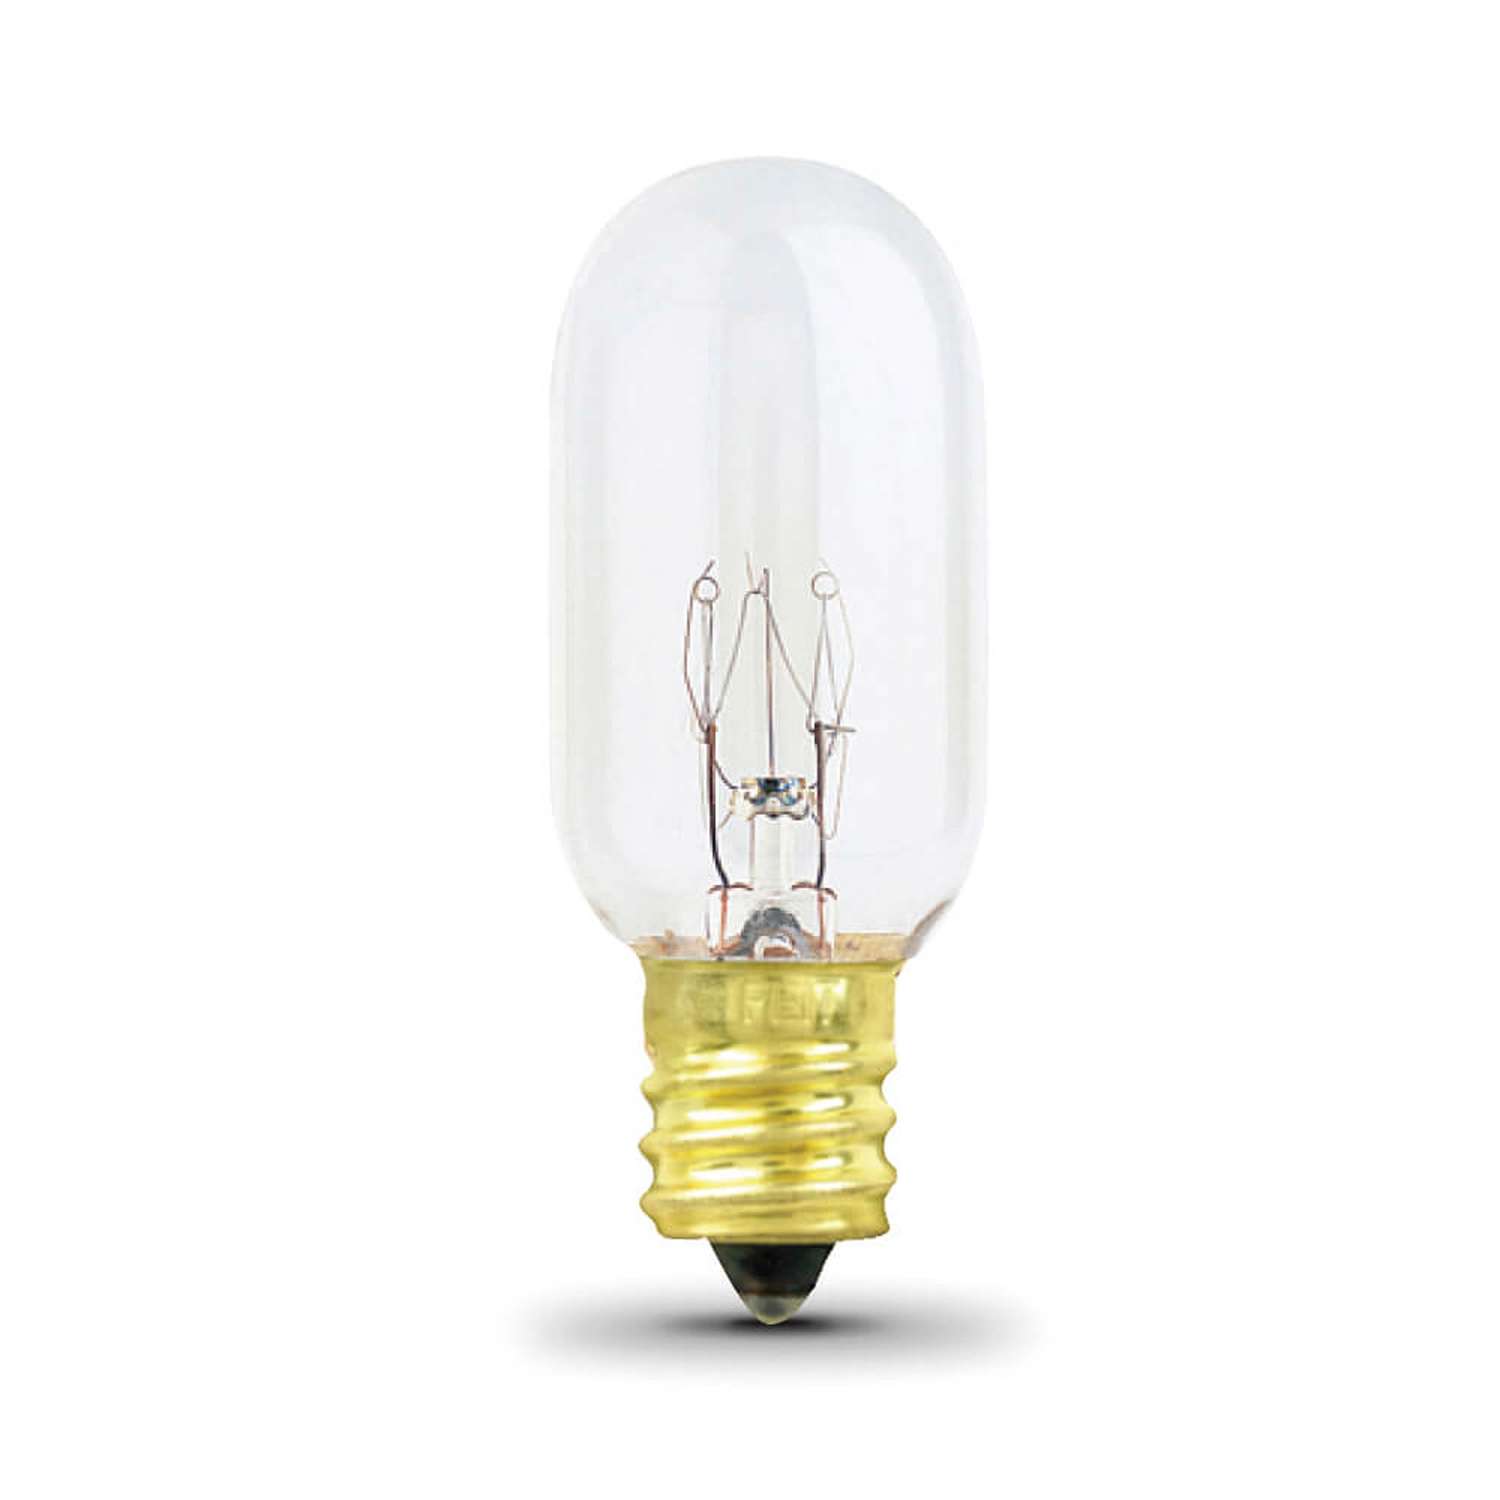 Frigidaire light bulb replacement : r/Appliances